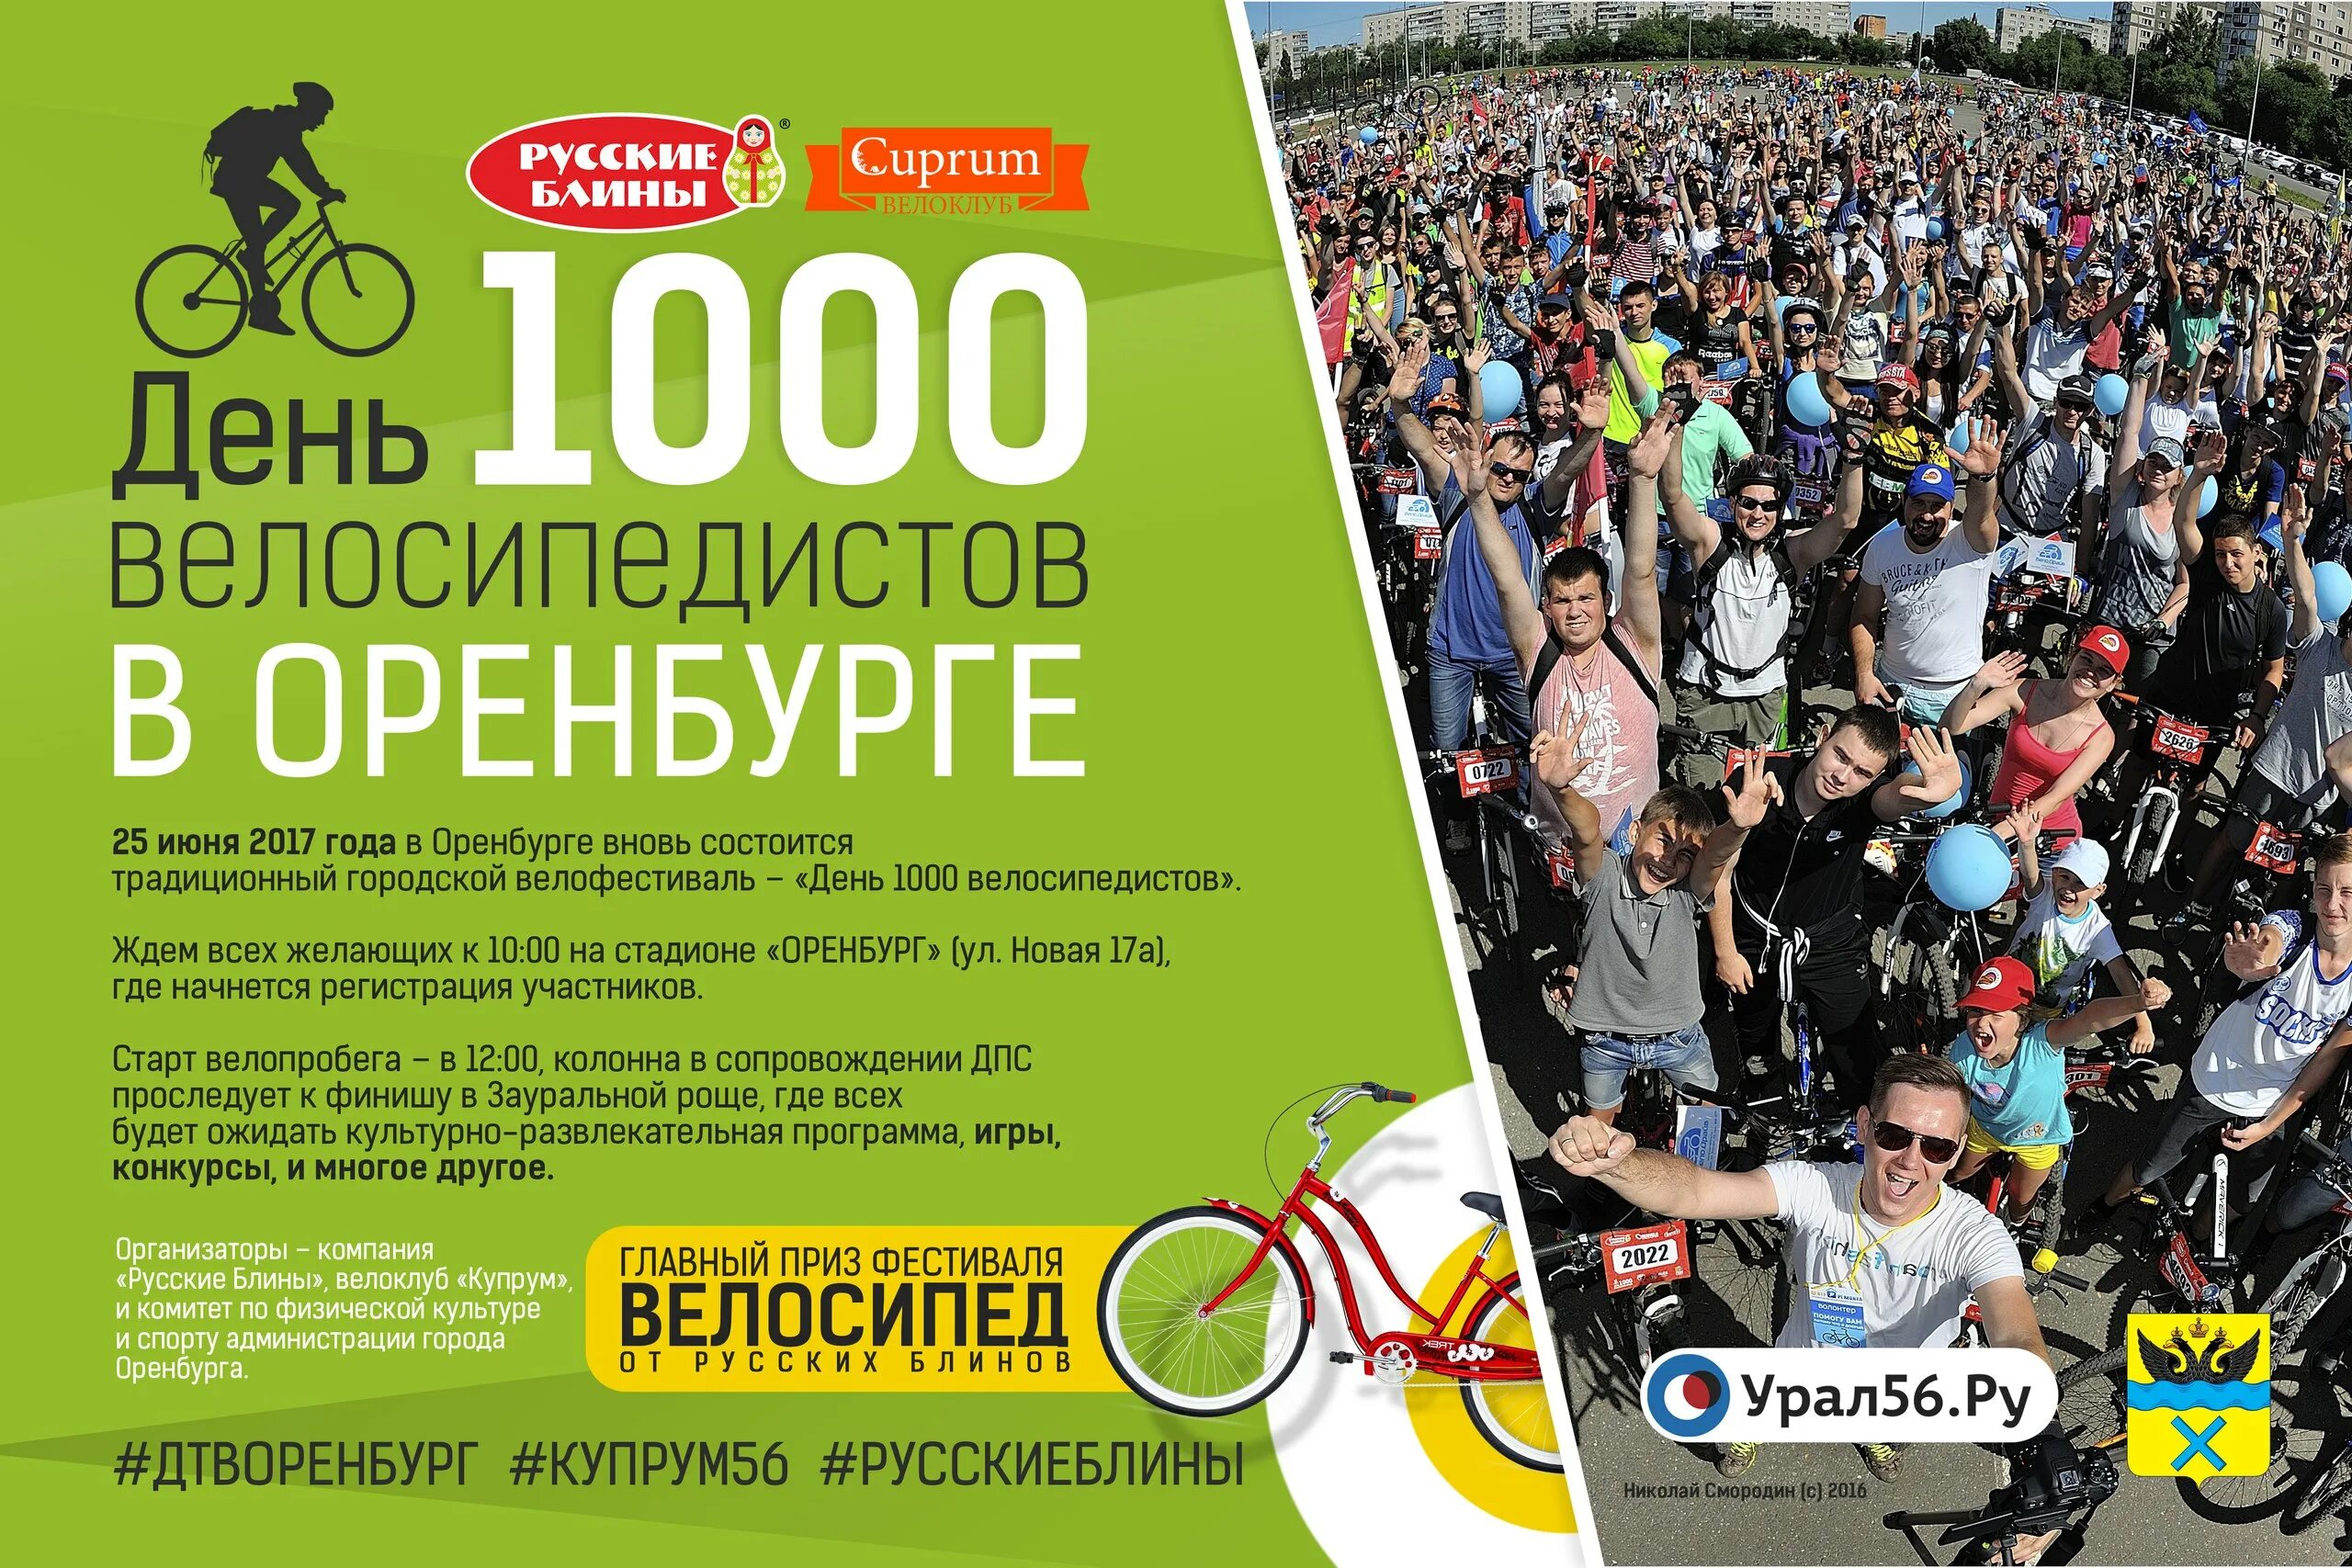 1000 дней отзывы. День 1000 велосипедистов Оренбург. День города Оренбург афиша. 25 Июня Оренбург. Мероприятия на лето в Оренбурге.